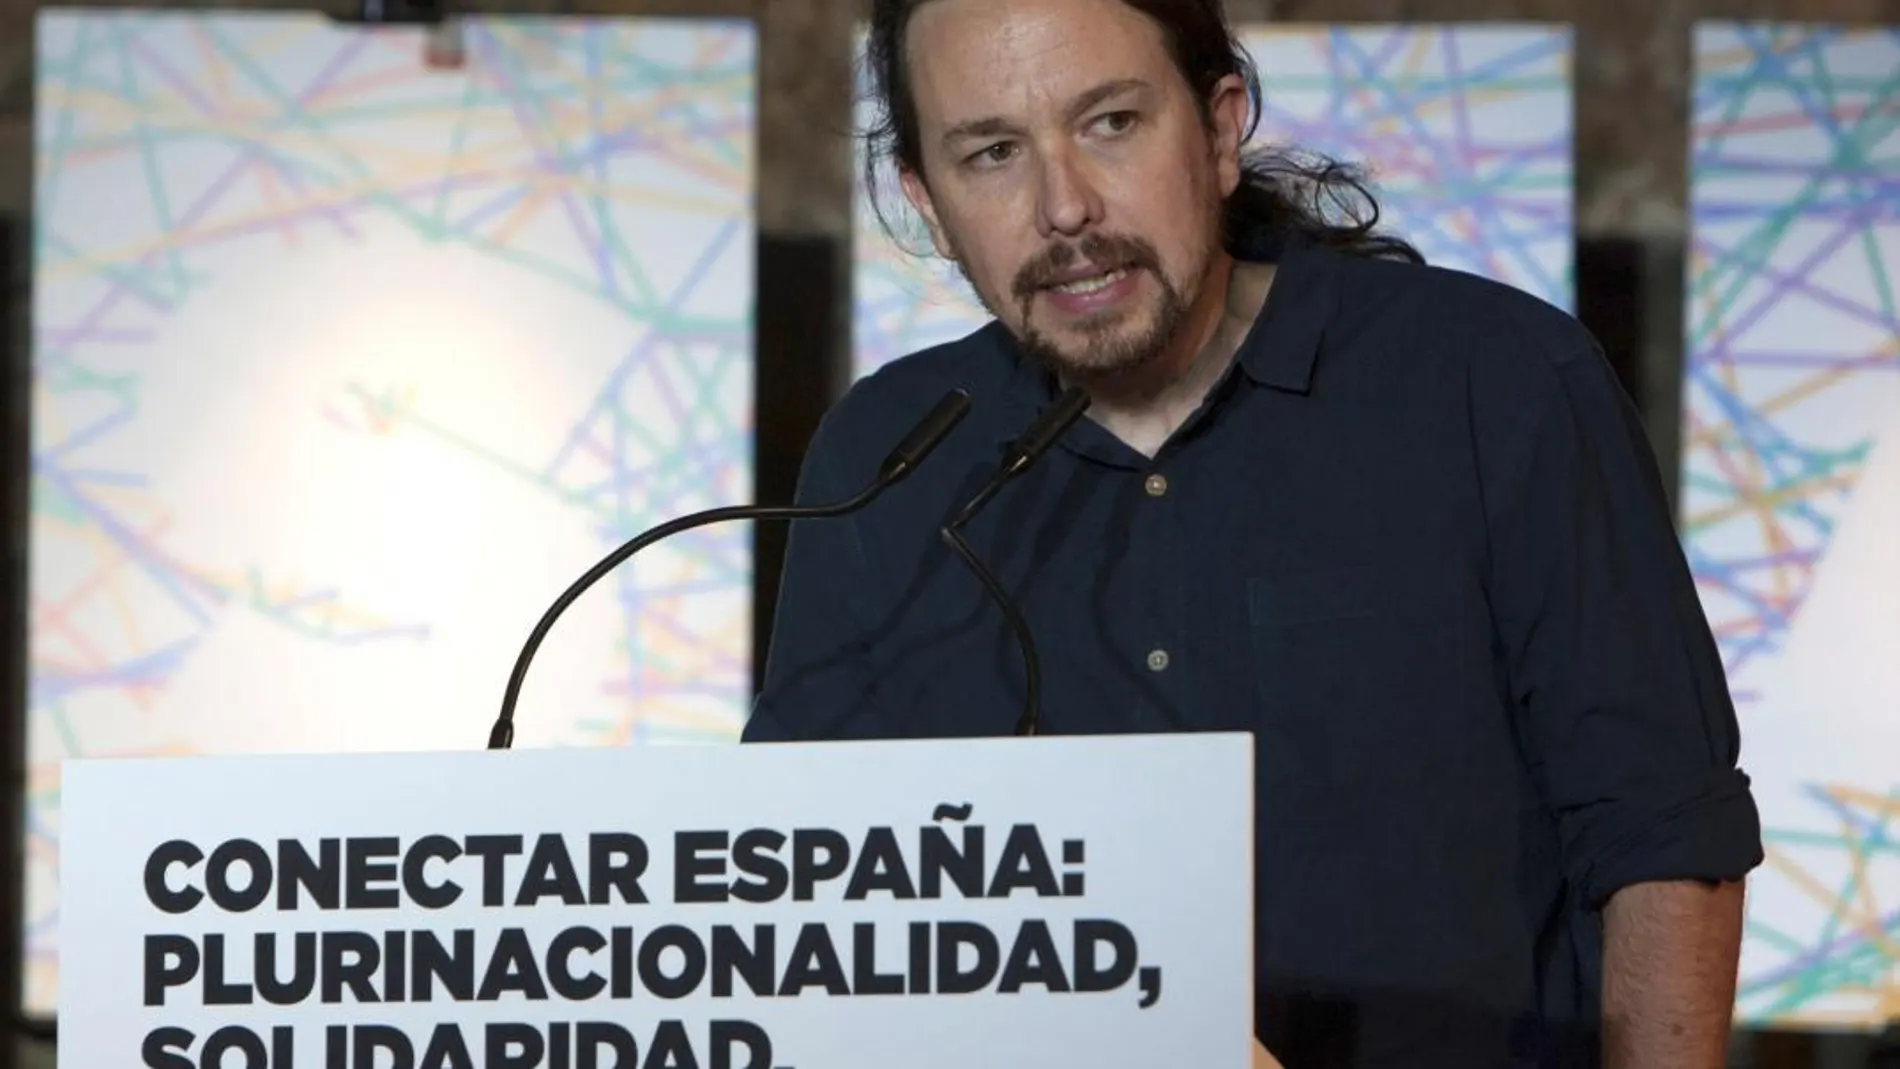 El secretario general de Podemos, Pablo Iglesias participa en un acto enmarcado en la ruta "Conectar España"